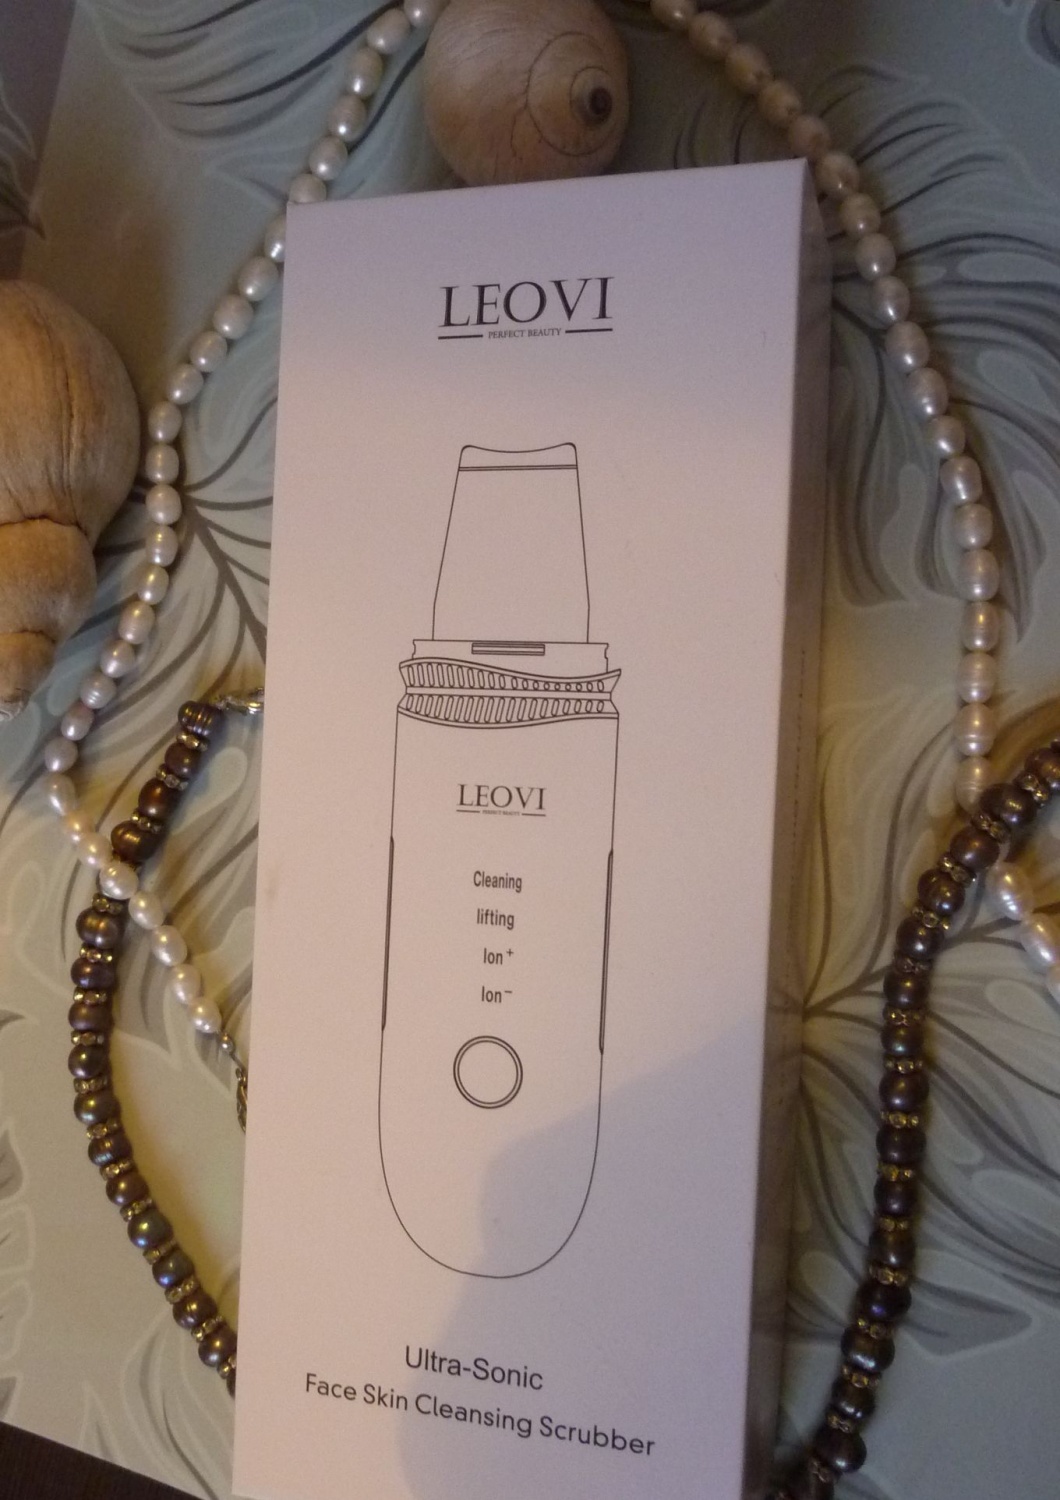 Аппарат для ультразвуковой чистки лица LEOVI Ultra-Sonic фото